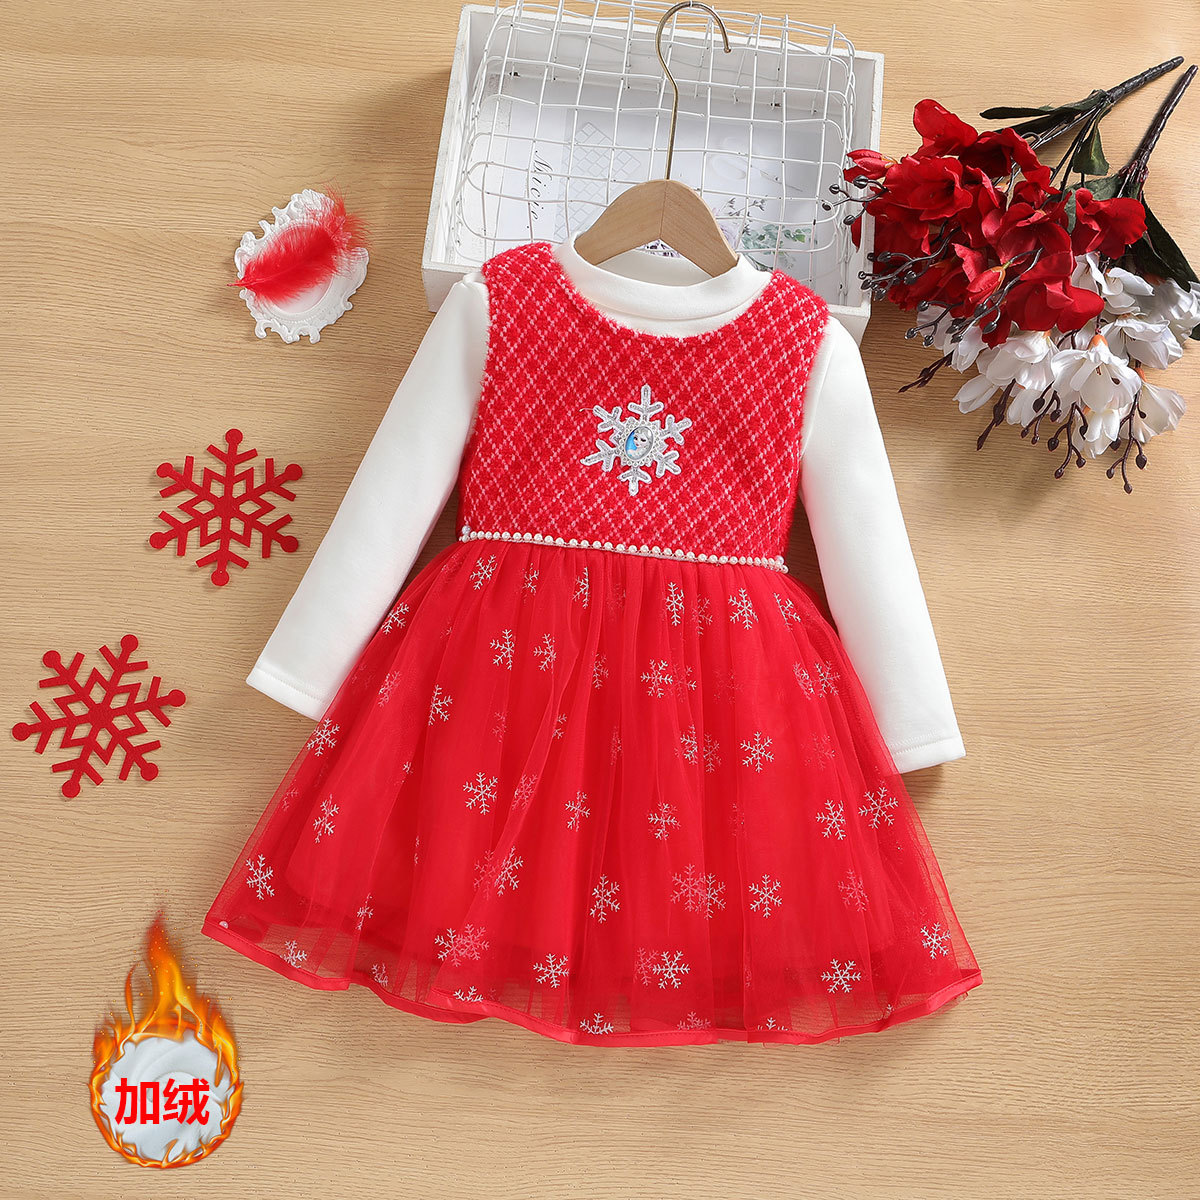 女童冬季新款连衣裙长袖加绒加厚红色中国风爱莎公主裙年服两件套